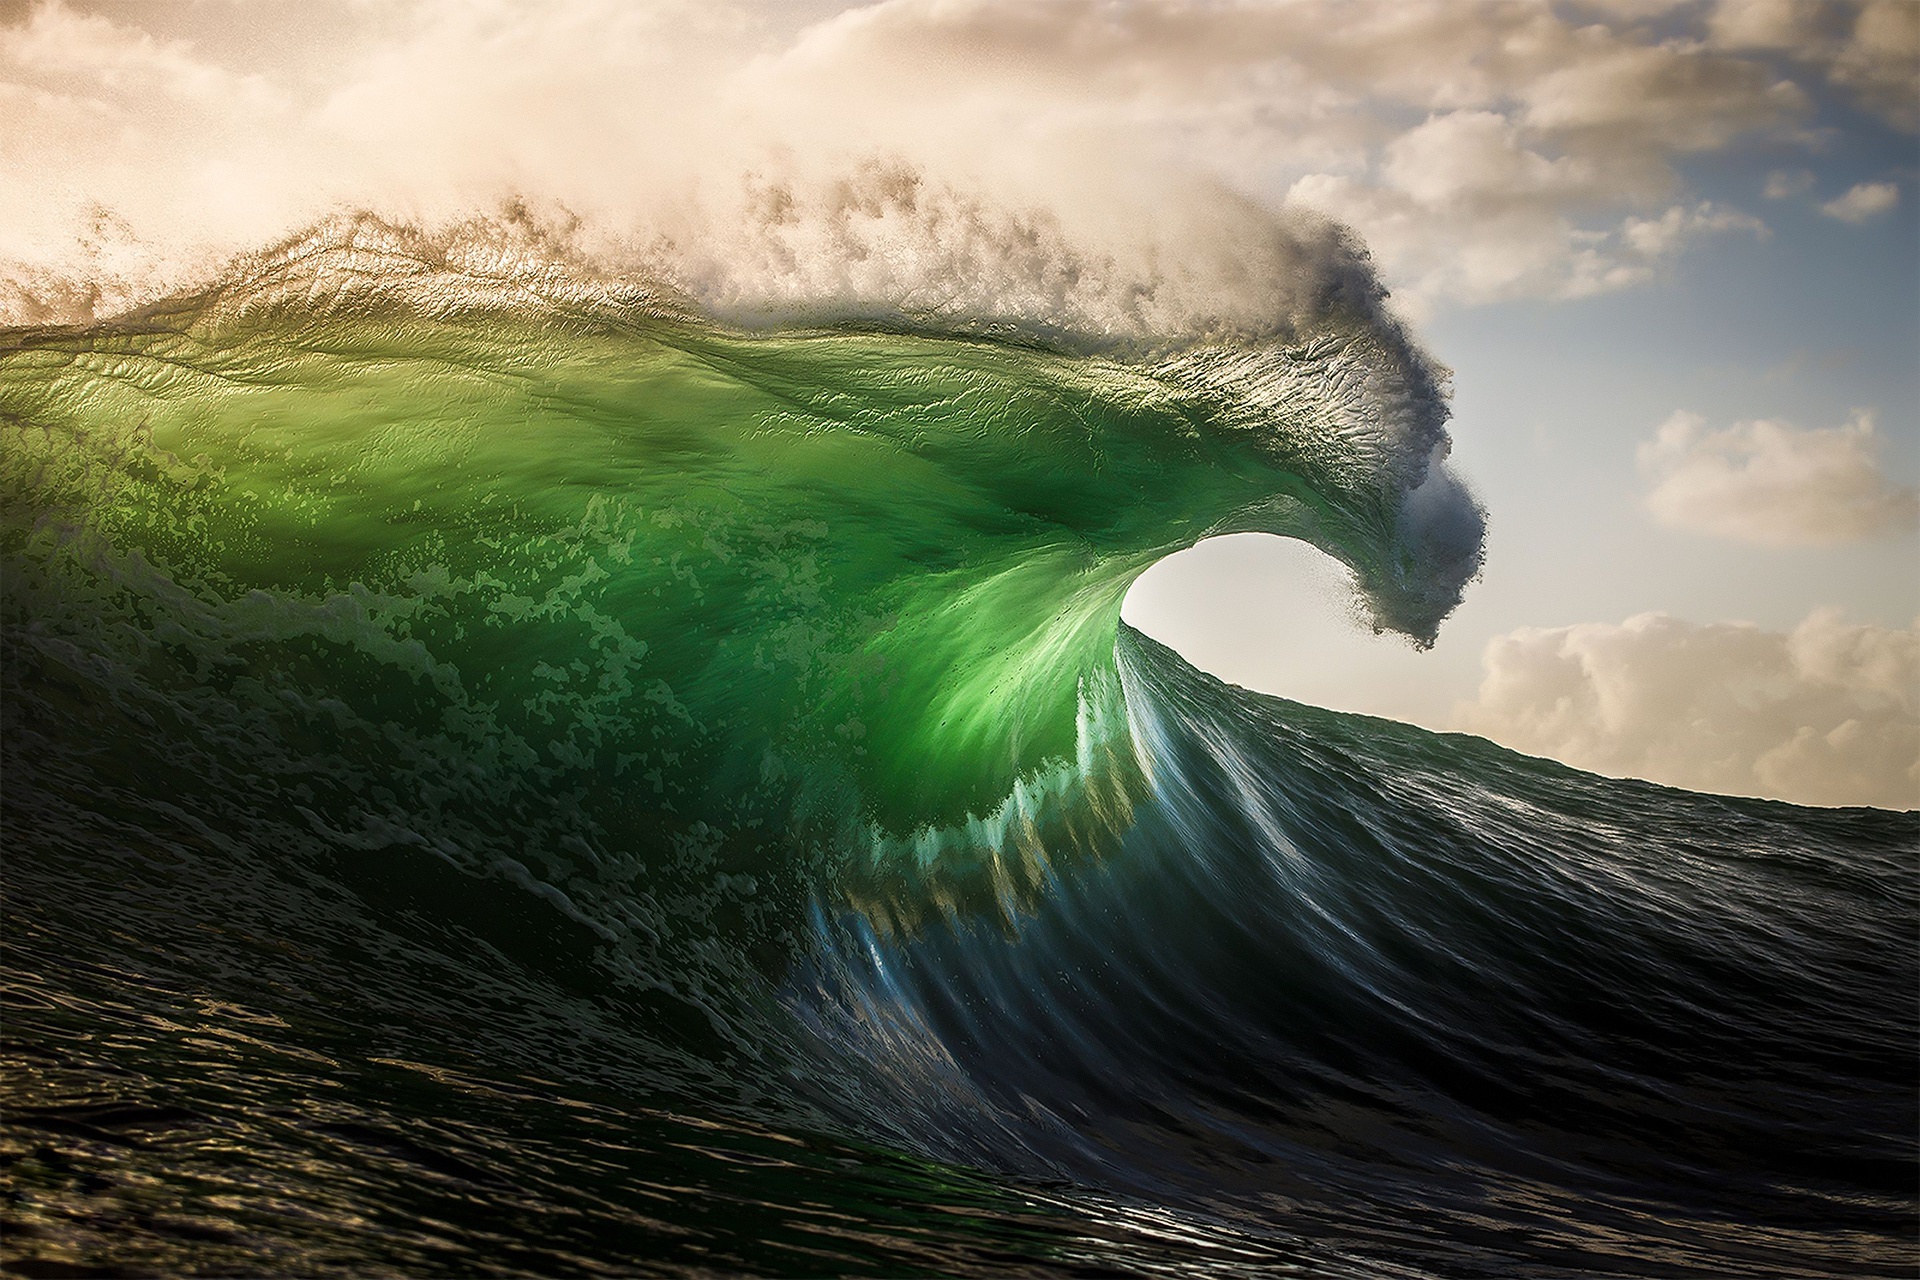 Hãy chiêm ngưỡng những cơn sóng biển dữ dội bằng mắt thường không thể nhìn thấy qua tấm ảnh chân thực này. Sự hòa quyện giữa sức mạnh, động lực và sự đa dạng mà biển cung cấp sẽ khiến bạn muốn tìm hiểu về hành trình của nó. 